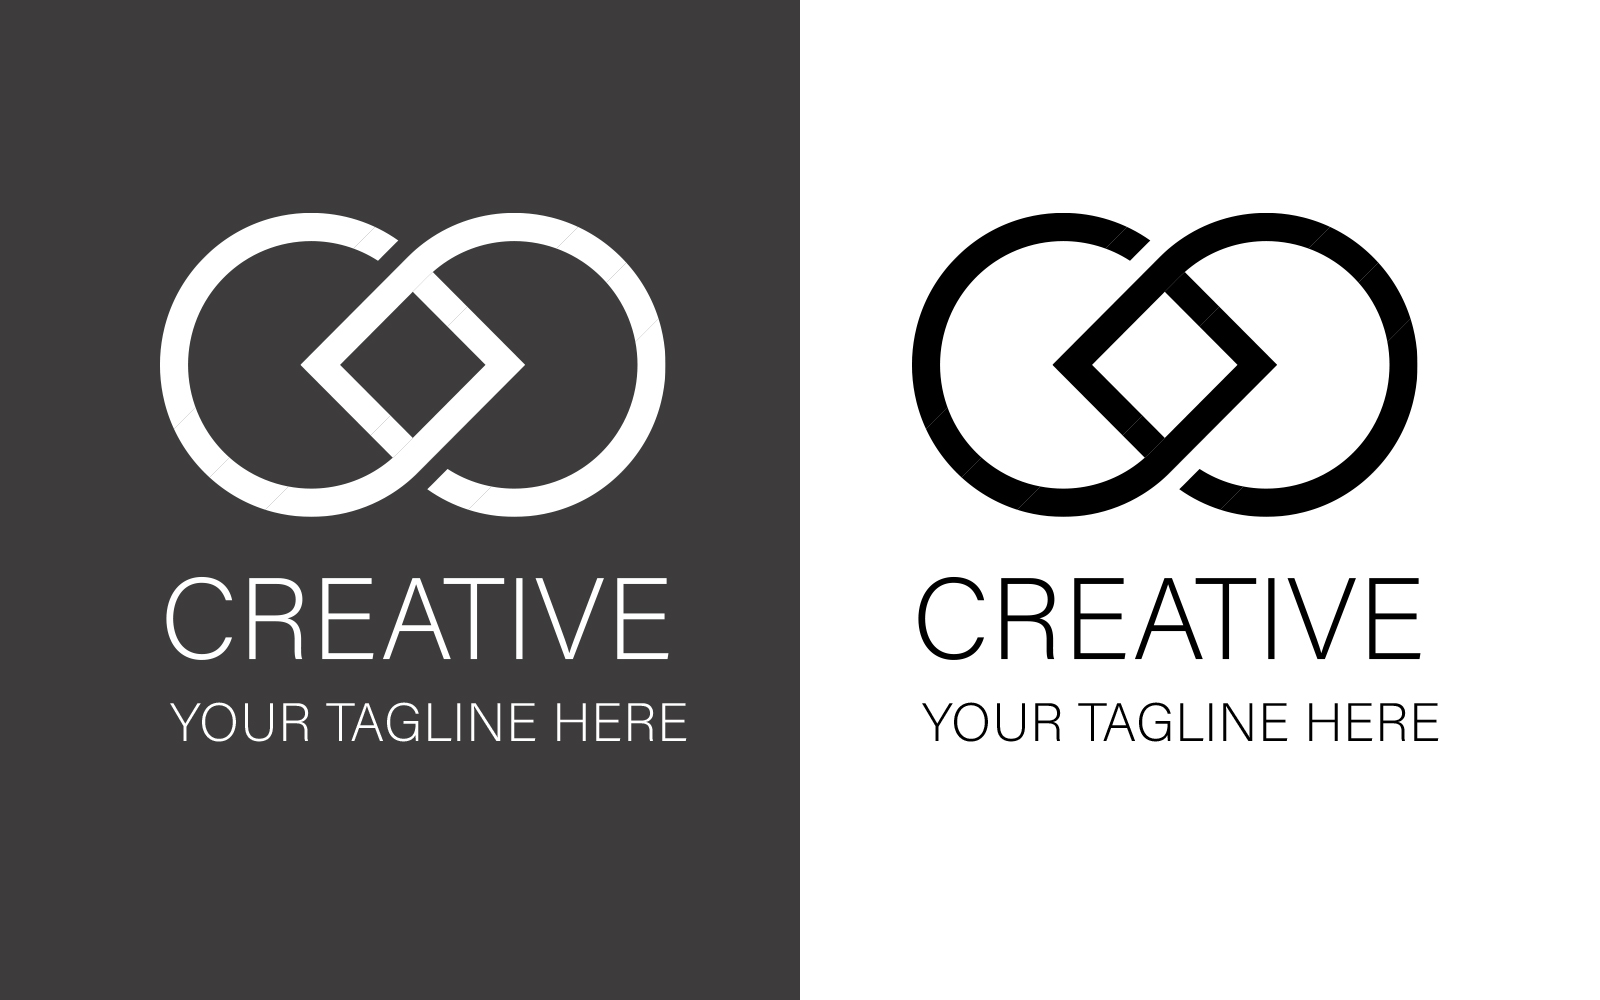 CREATIVE LOGO DESIGN | Colour Change | Printable